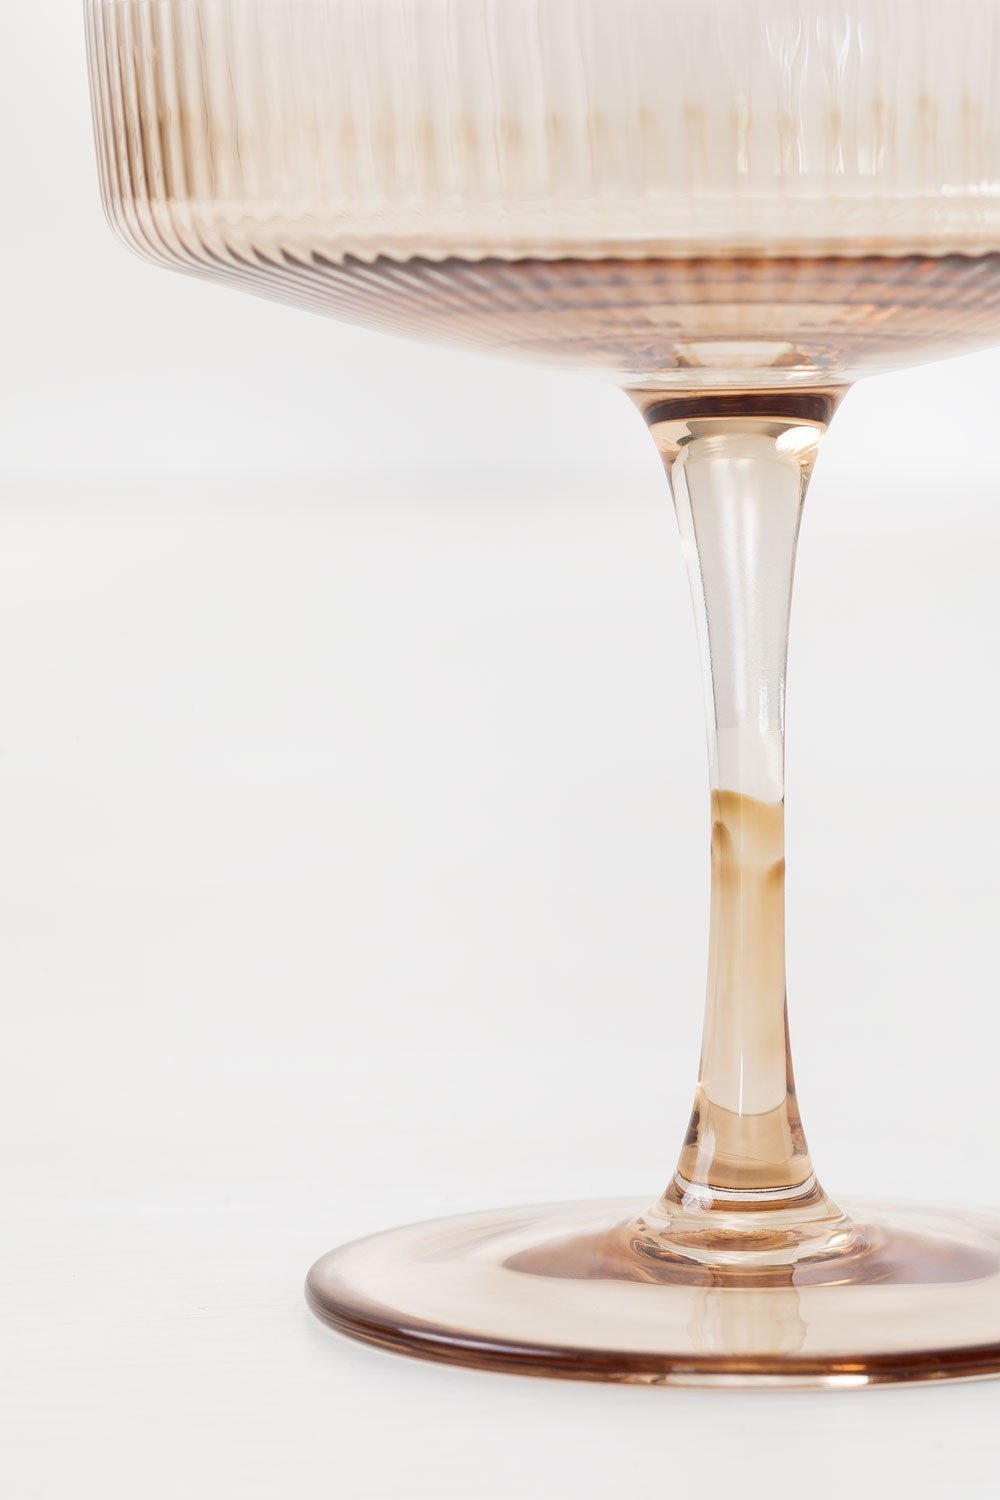 Coupes à champagne artisanales en verre strié Cami, 4 pièces